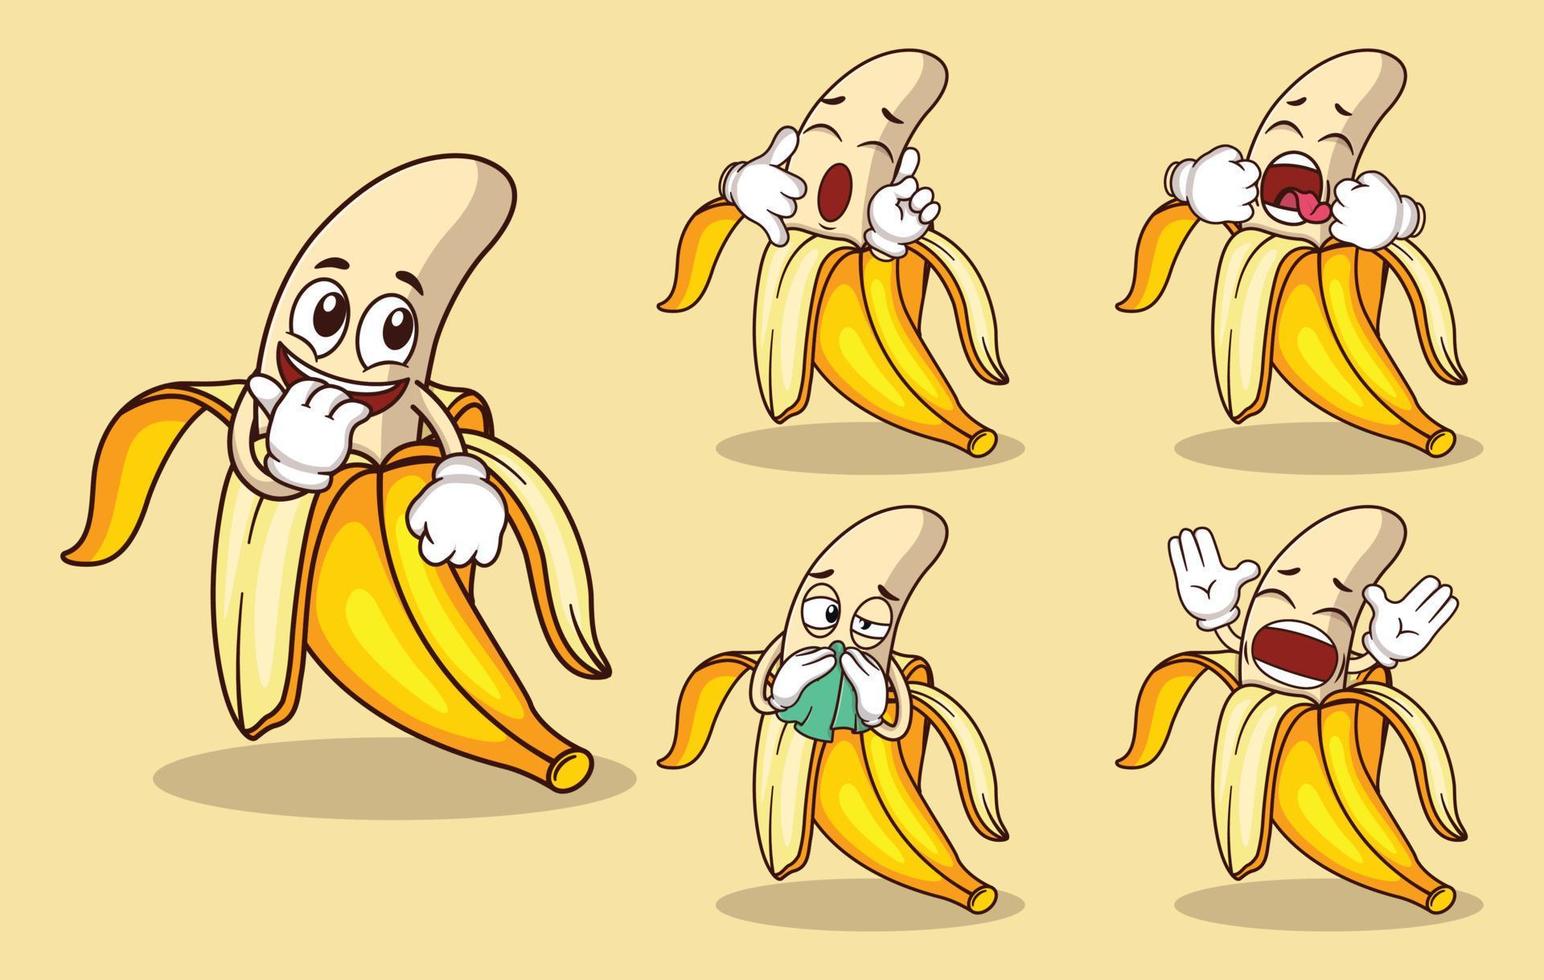 mascote de fruta banana fofa com vários tipos de coleção de conjuntos de expressões vetor